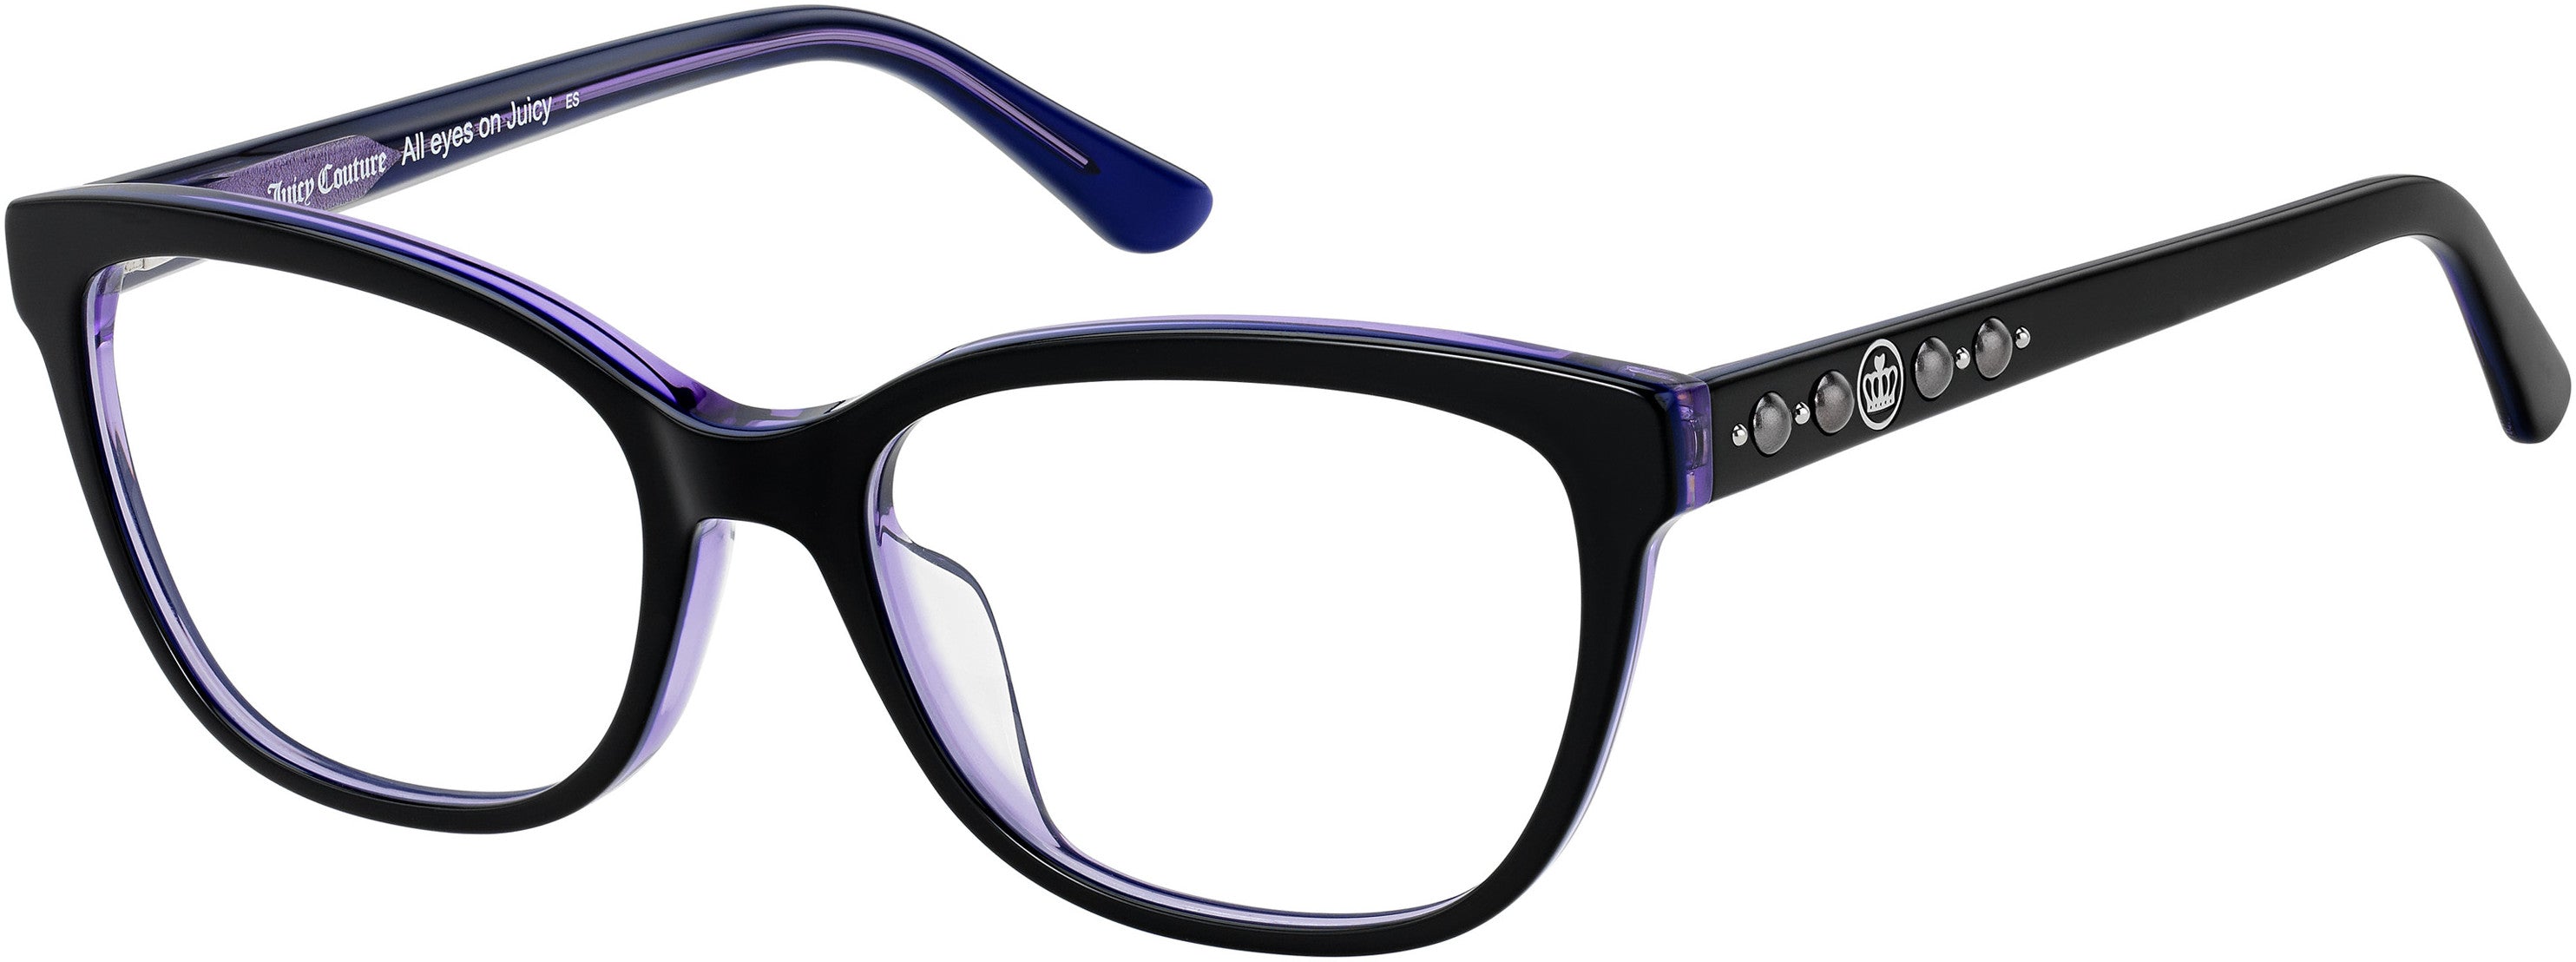 Juicy Couture Juicy 193 Rectangular Eyeglasses 0HK8-0HK8  Black Violet (00 Demo Lens)